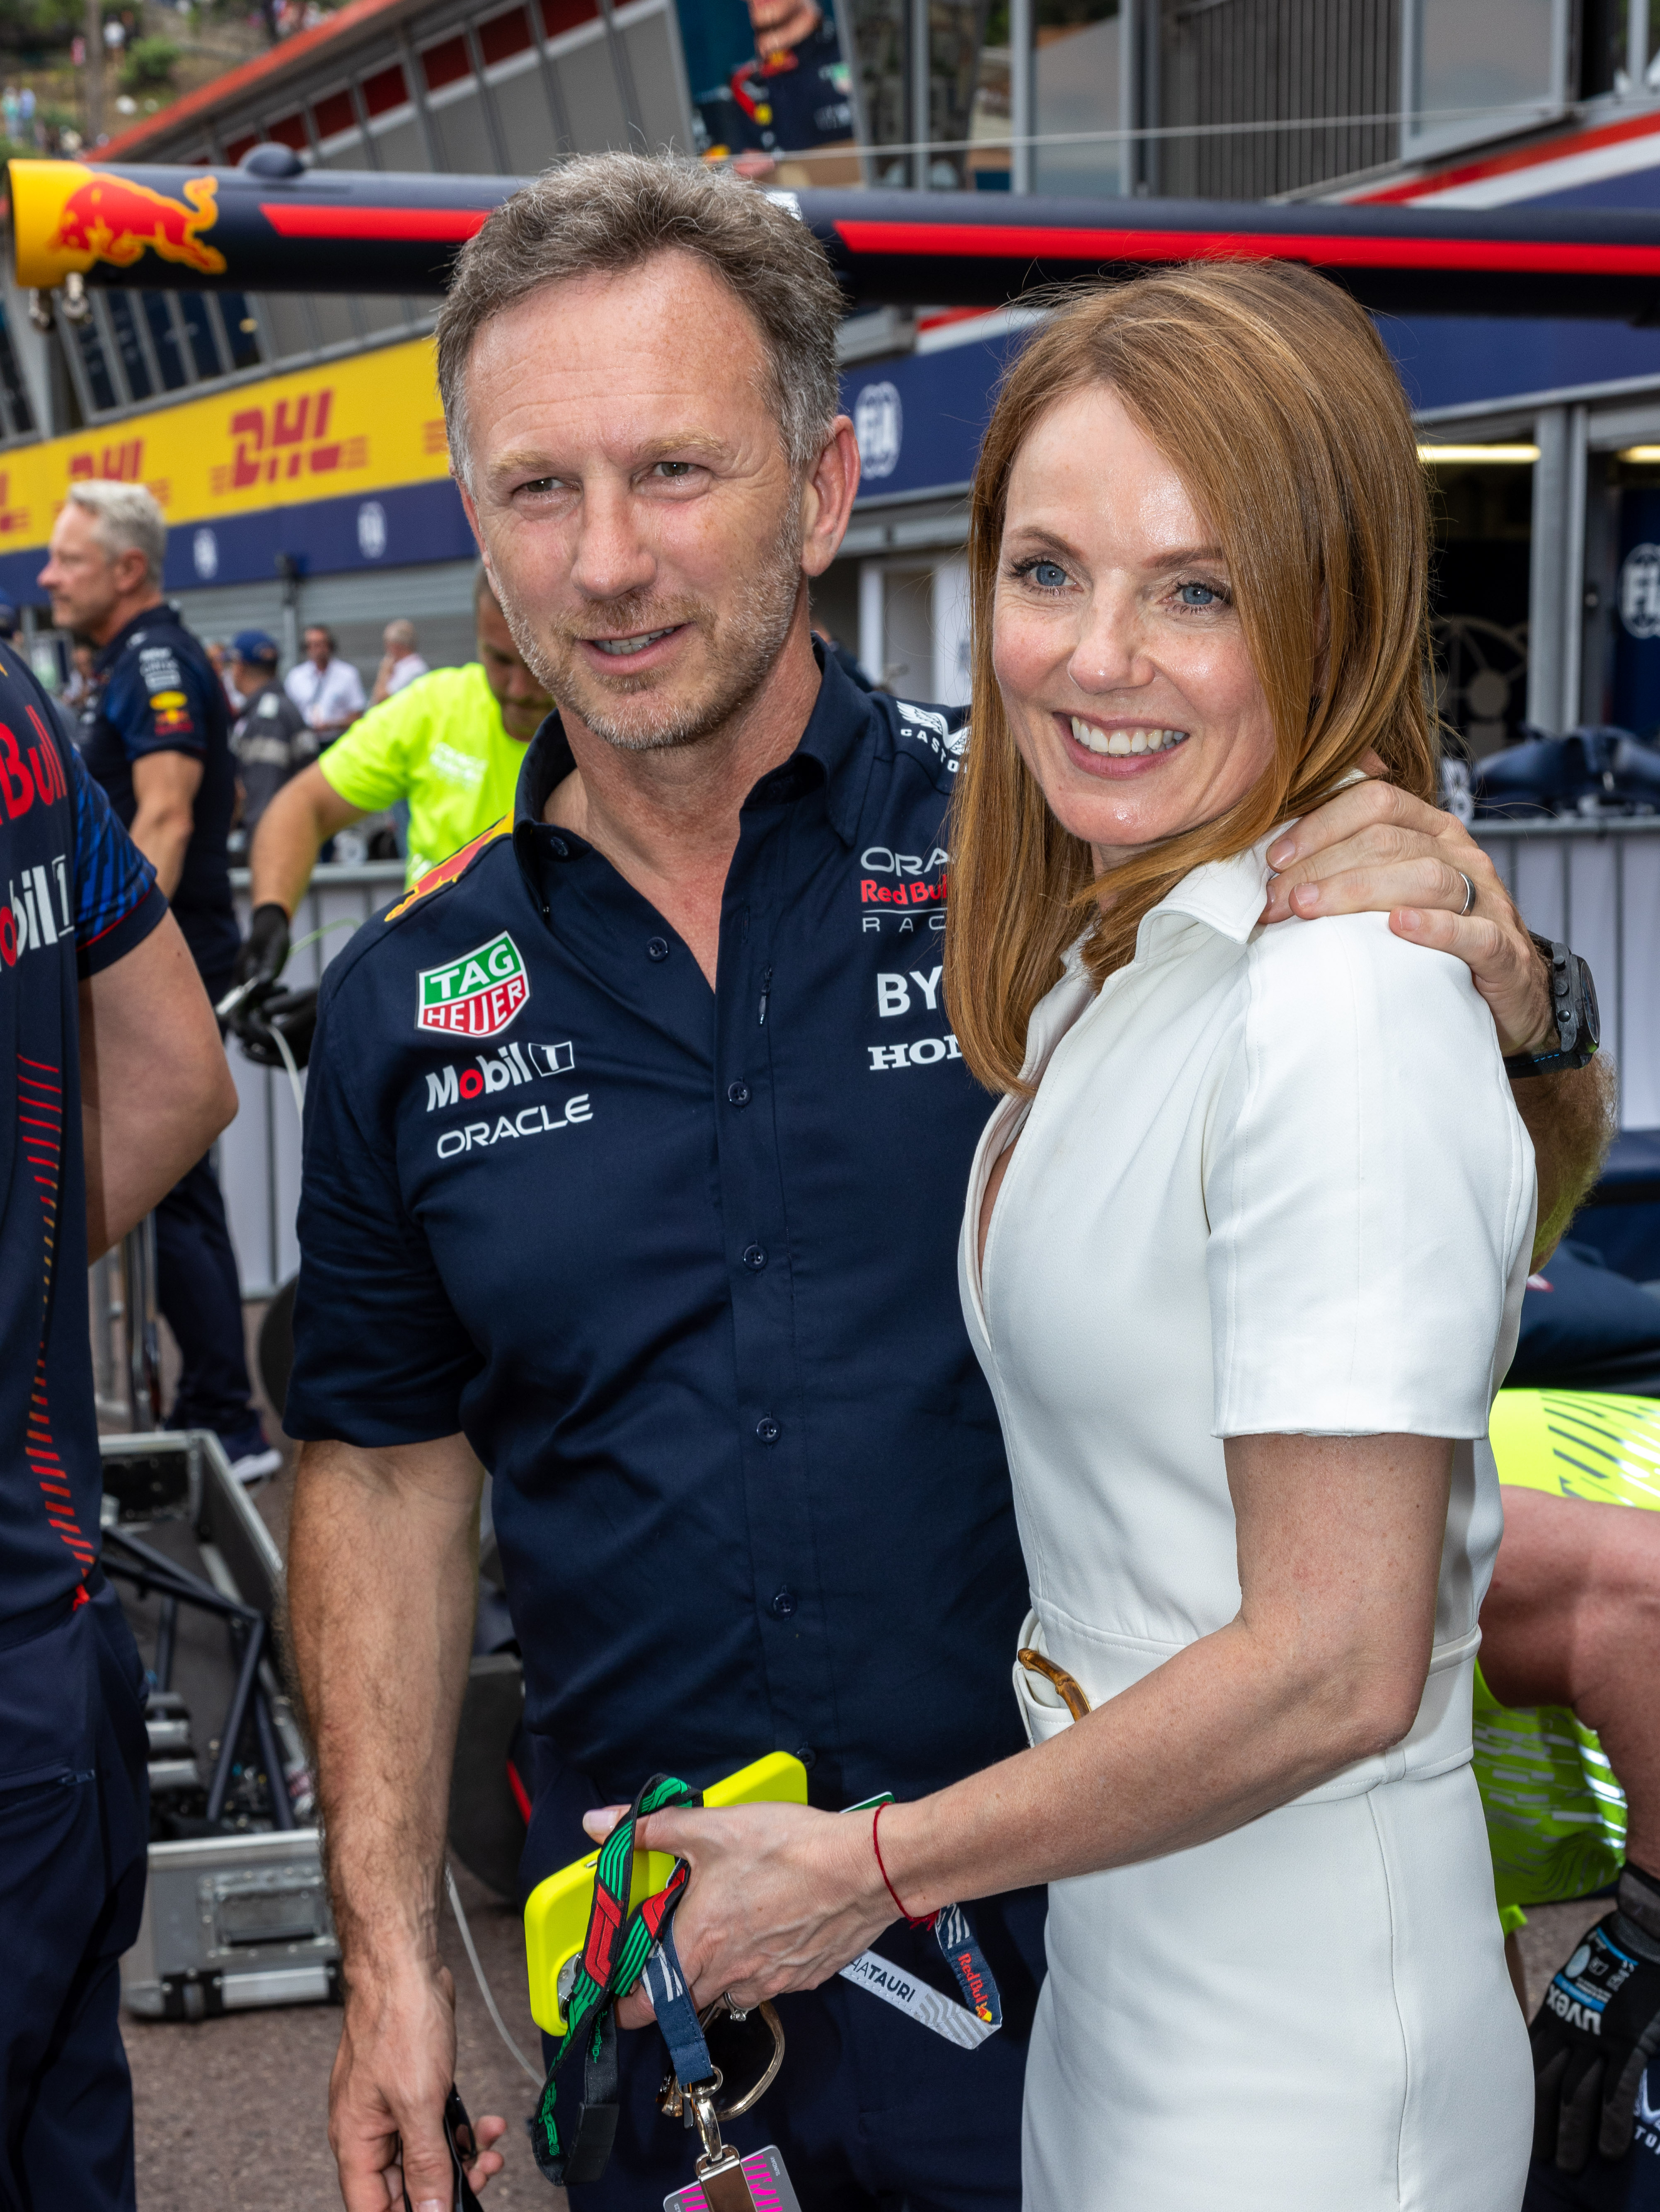 Die Ehefrau von Spice Girl, Geri, hat darauf bestanden, dass der F1-Chef nichts falsch gemacht hat